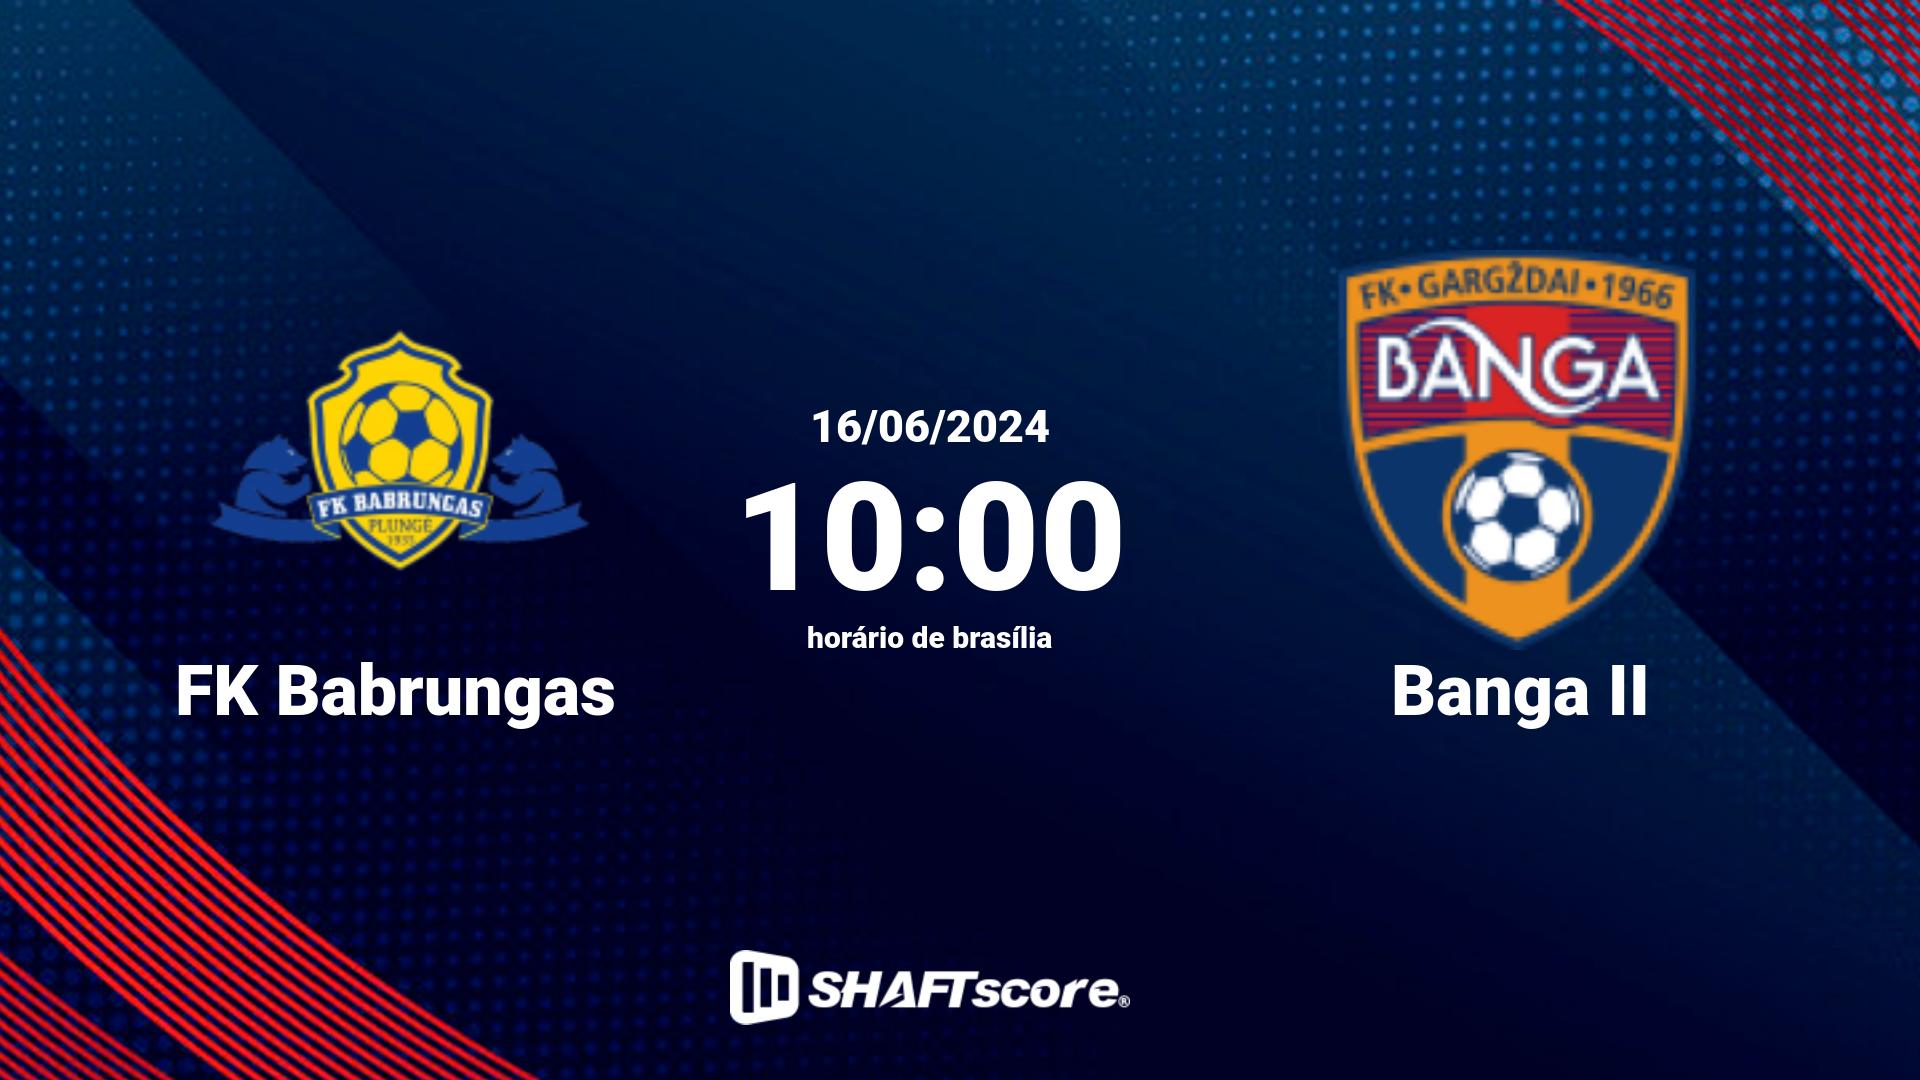 Estatísticas do jogo FK Babrungas vs Banga II 16.06 10:00